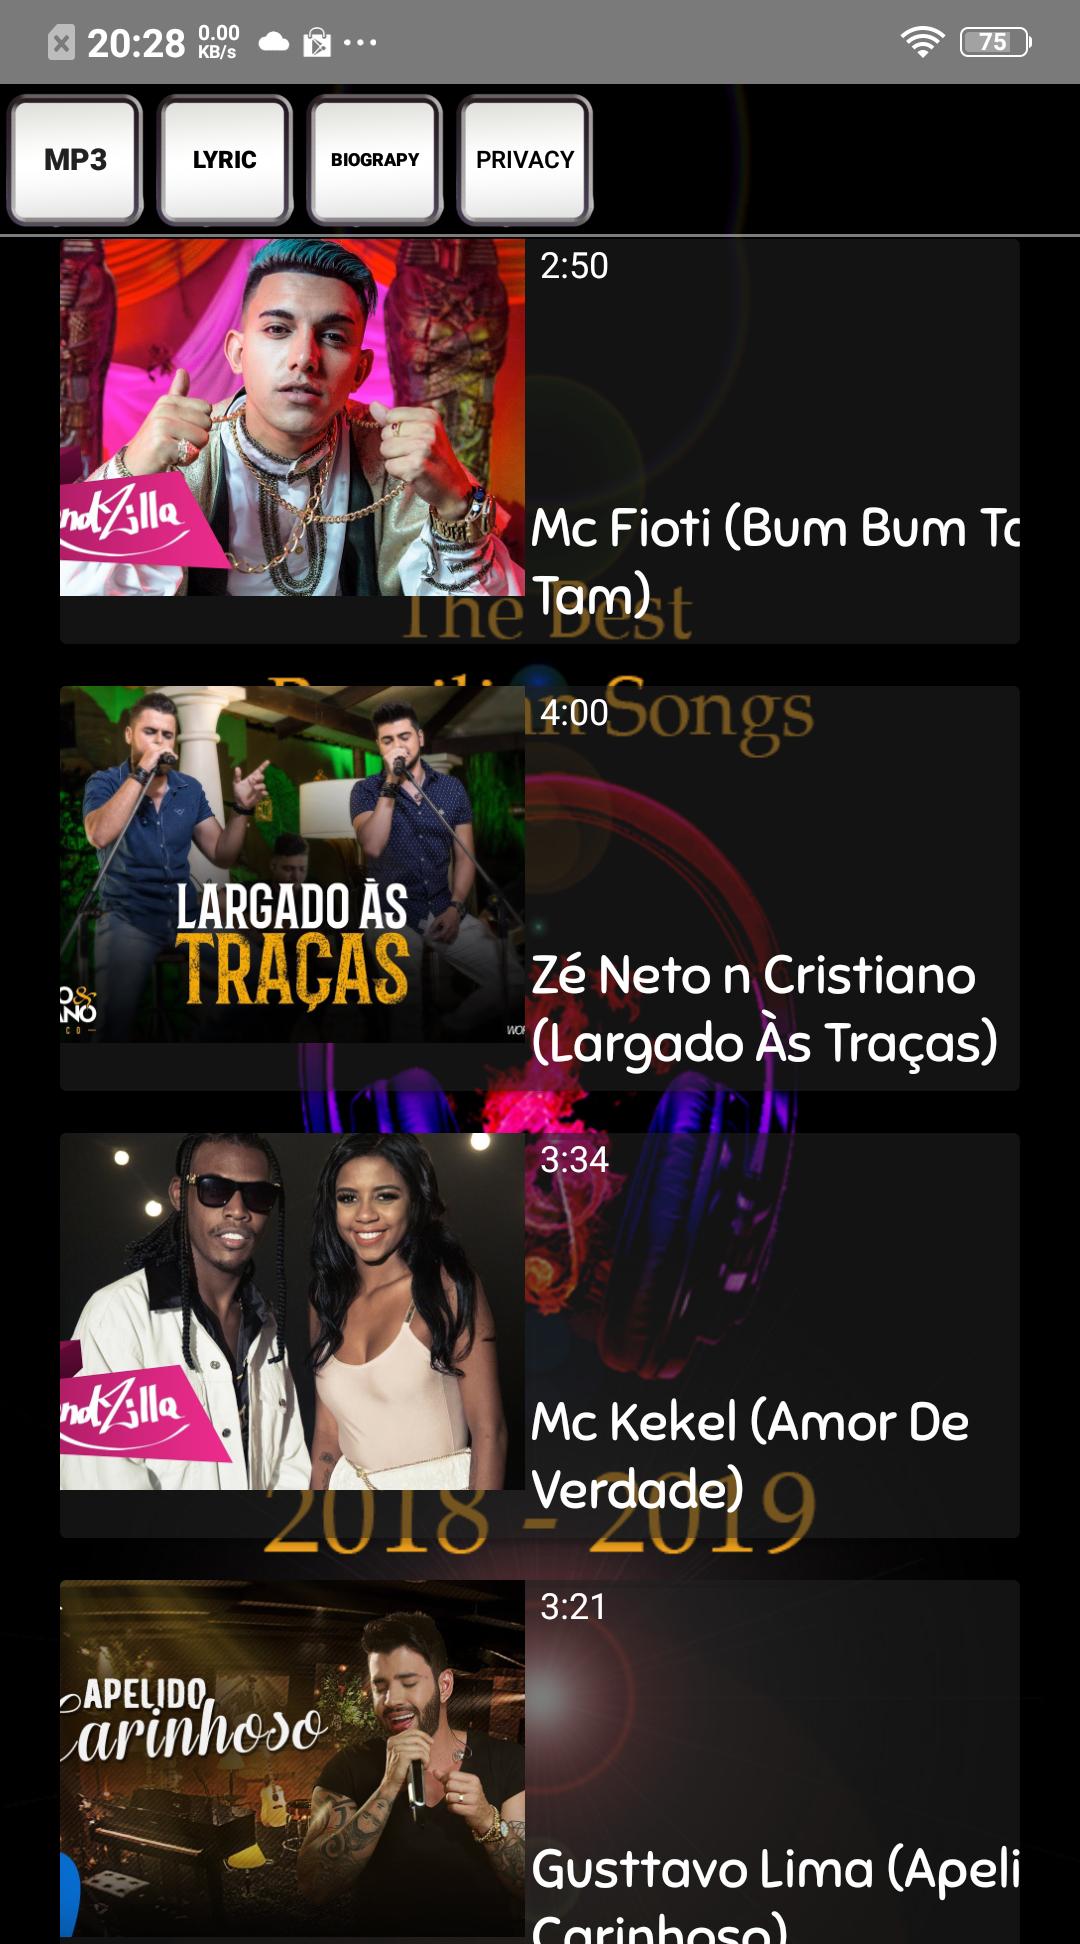 melhores músicas de vídeo brasileiras 2018 - 2019 for Android - APK Download